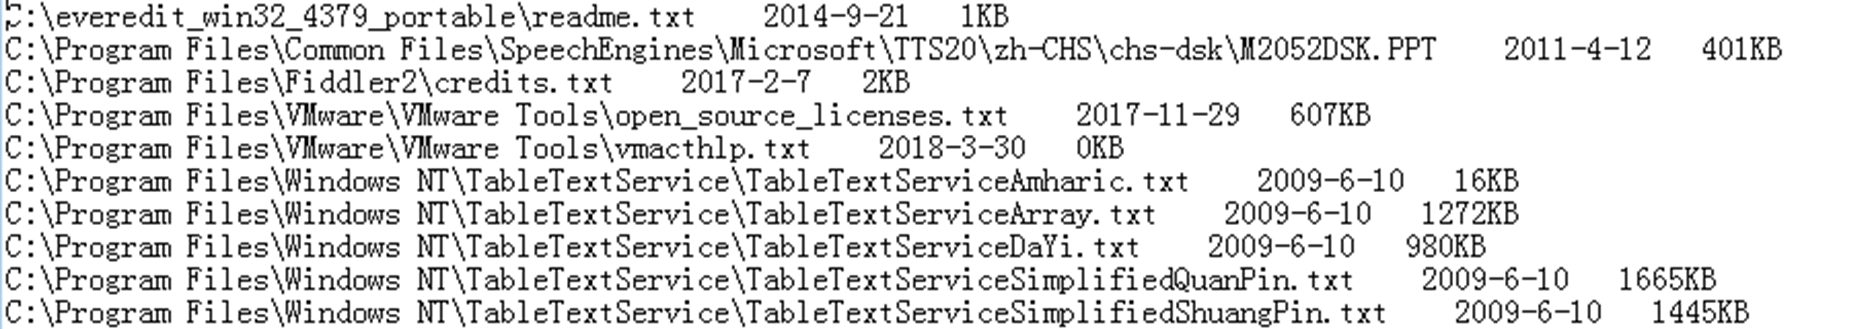 蓝宝菇(APT-C-12)最新攻击样本及C&C机制分析-第33张图片-网盾网络安全培训